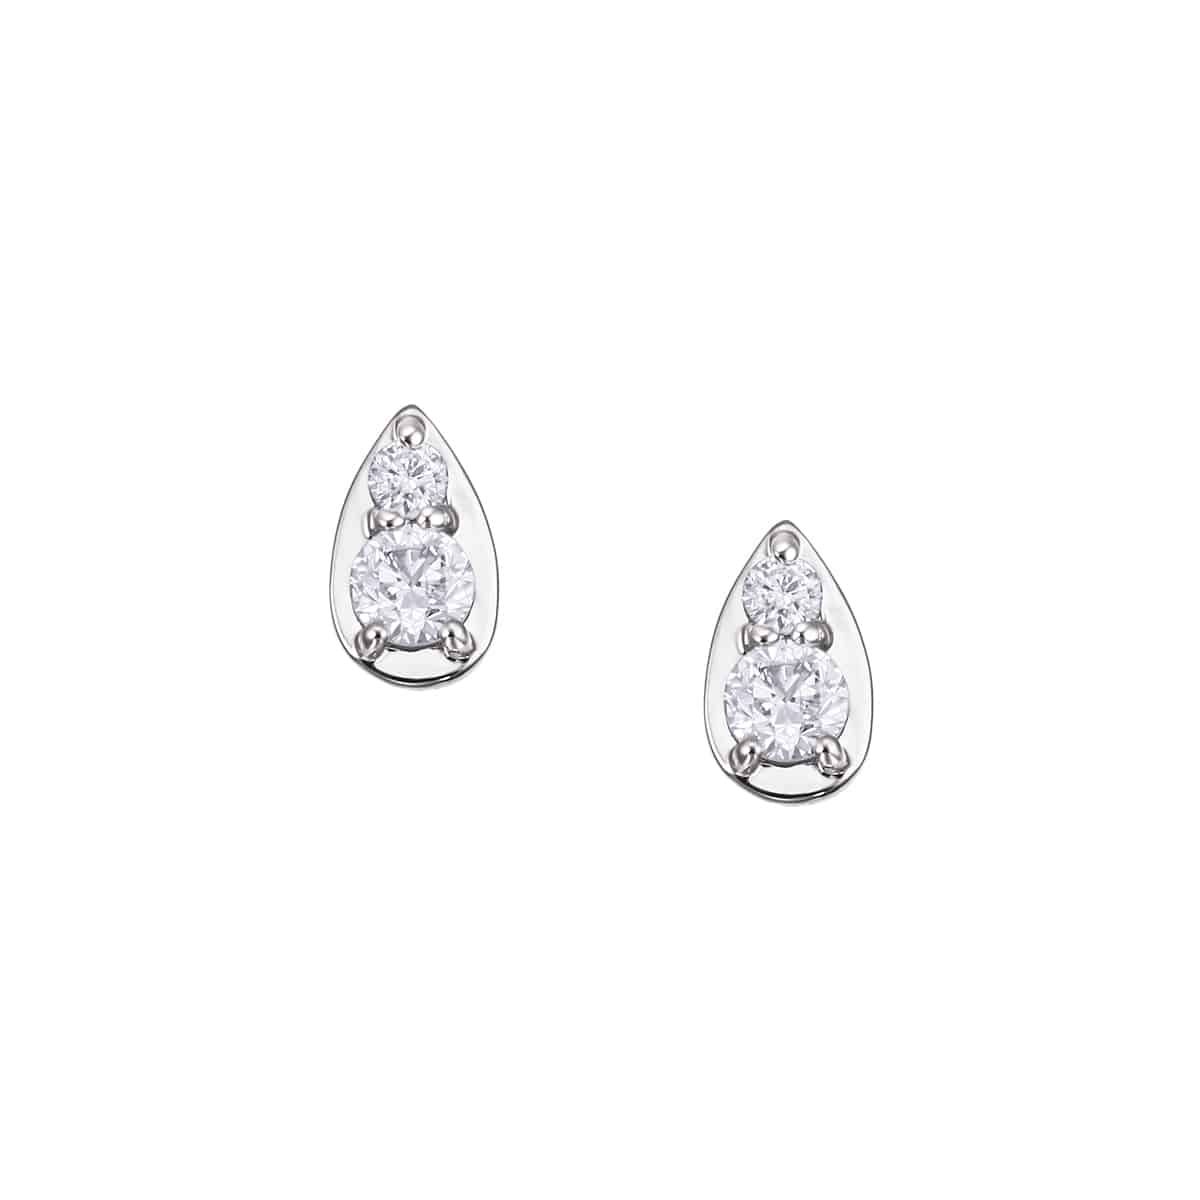 TSUTSUMIオリジナルブランド『Blessed Rain』の光を受けてきらめく『しずく』をダイヤモンドとメタルで表現したミニマルなデザインが美しいプラチナダイヤモンドピアス